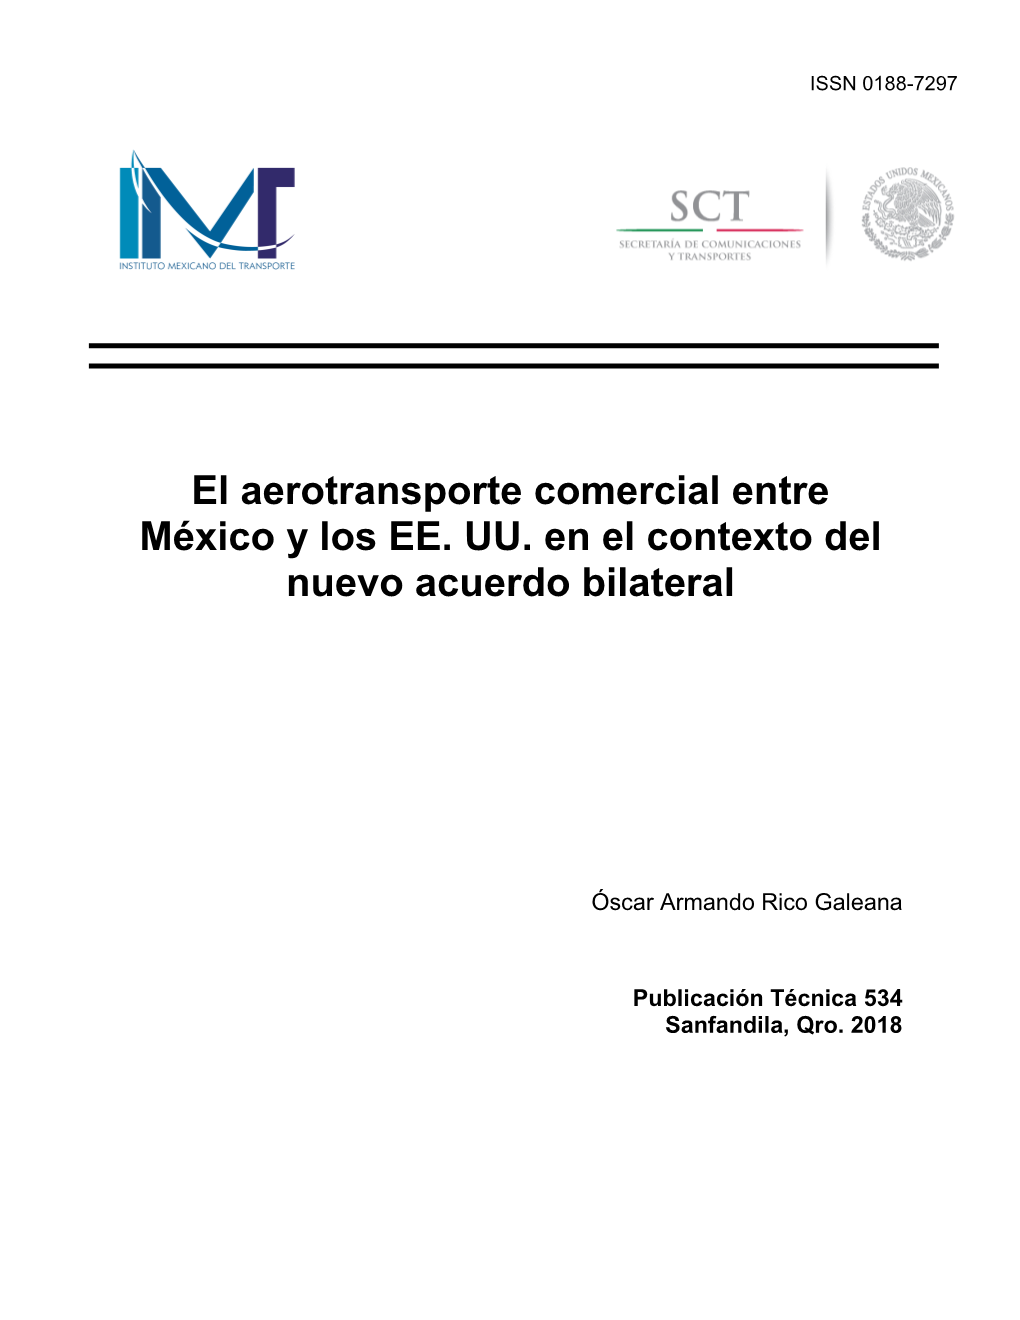 El Aerotransporte Comercial Entre México Y Los EE. UU. En El Contexto Del Nuevo Acuerdo Bilateral